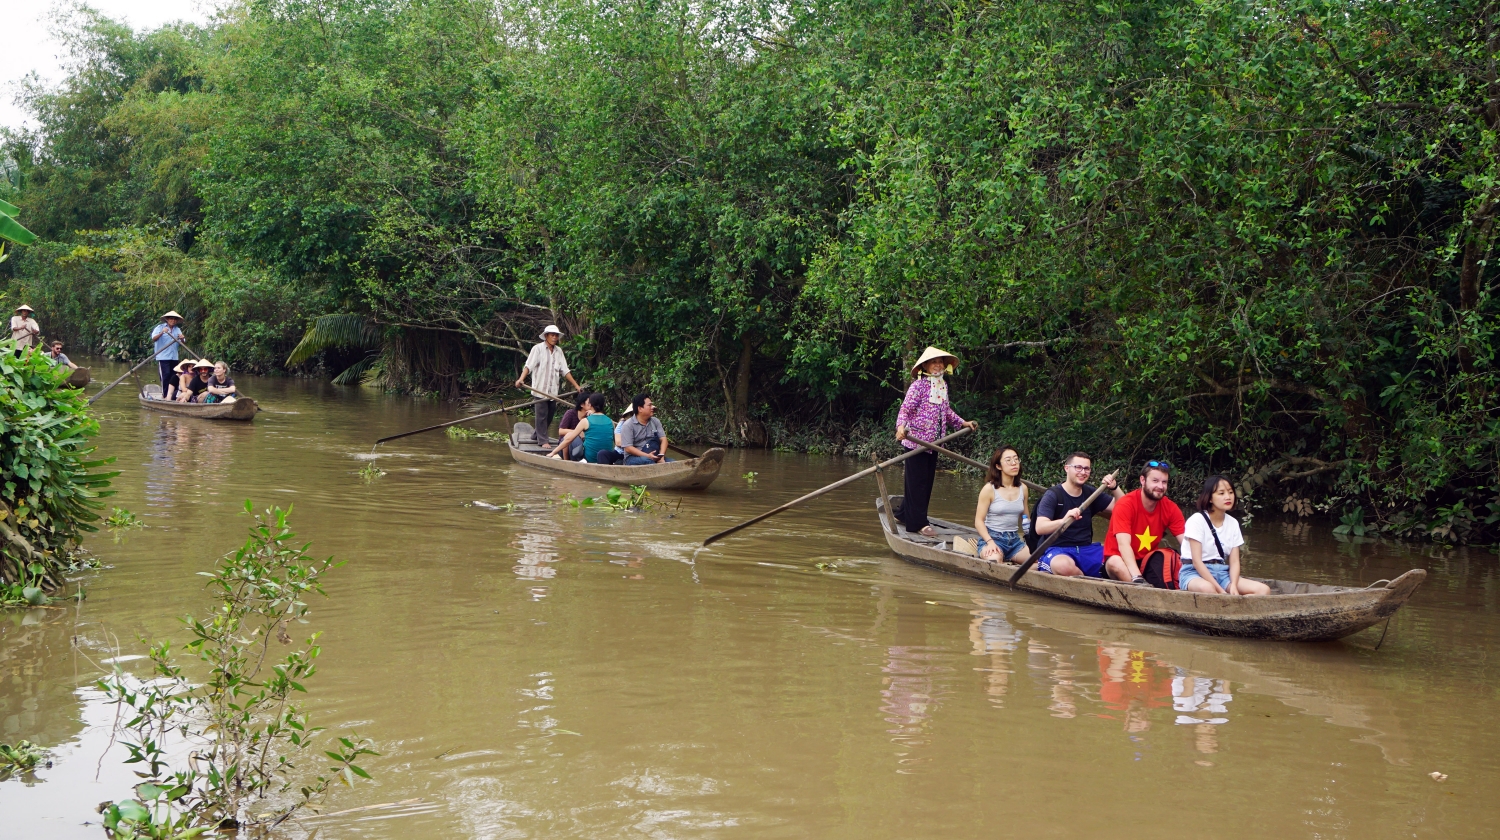 Hè đến về Vĩnh Long trải nghiệm khám phá sông nước miệt vườn